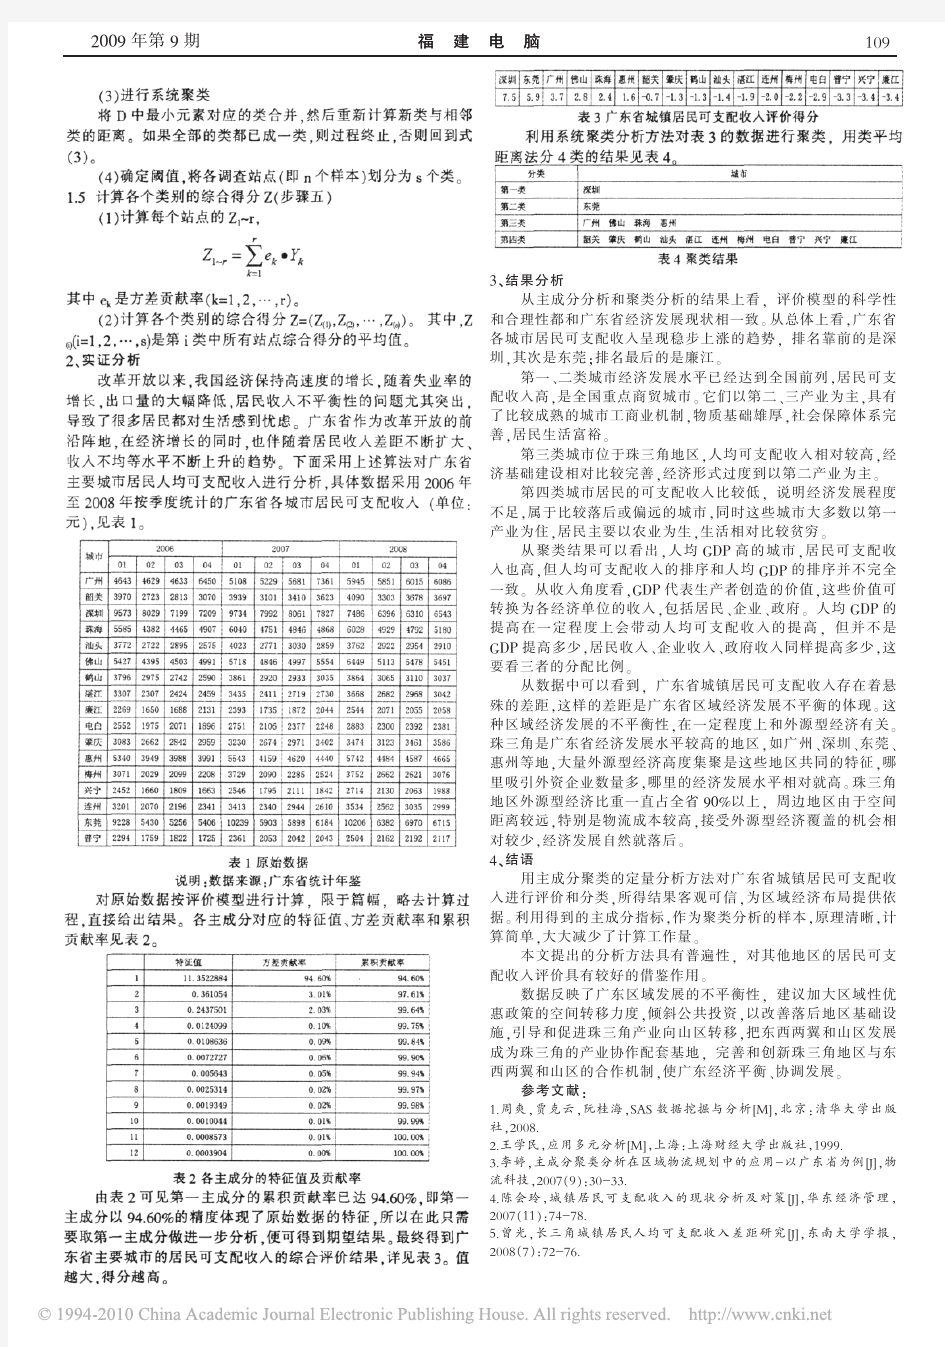 主成分聚类分析在区域经济评价中的应用_以广东省城镇居民可支配收入为例